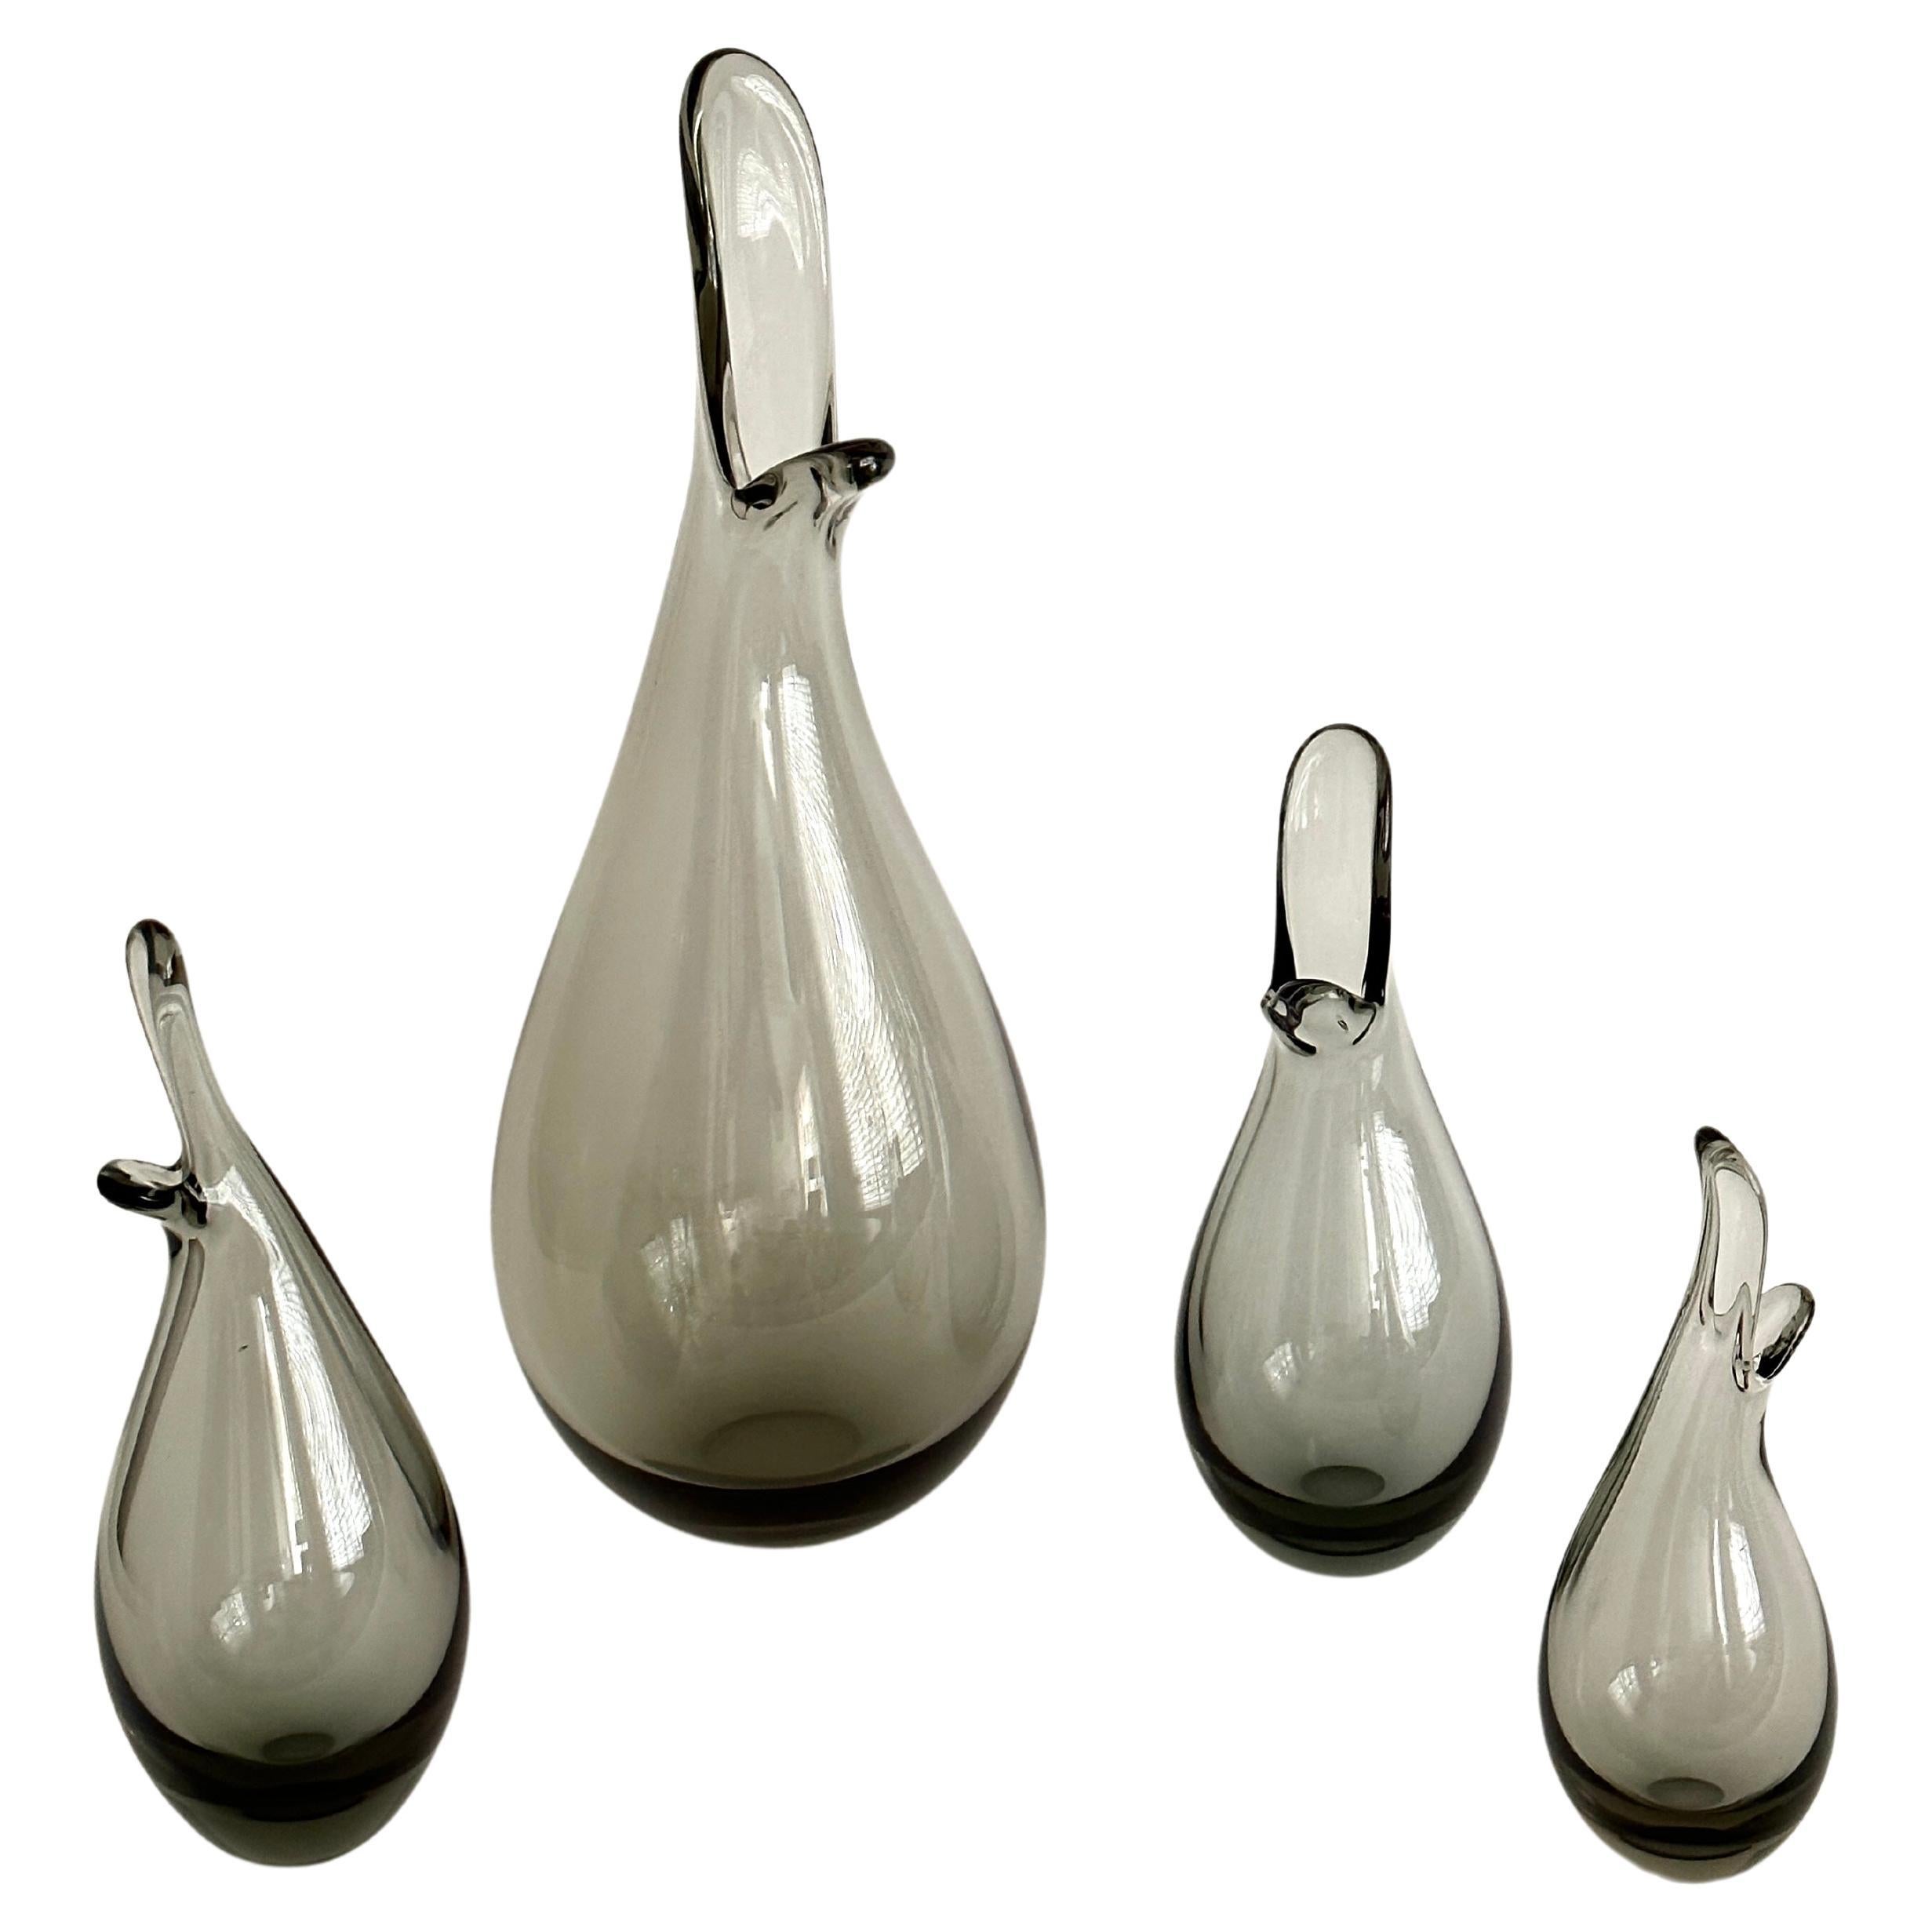 Quatre vases "Duckling" gris fumé designés par Per Lütken et provenant de Holmegaard